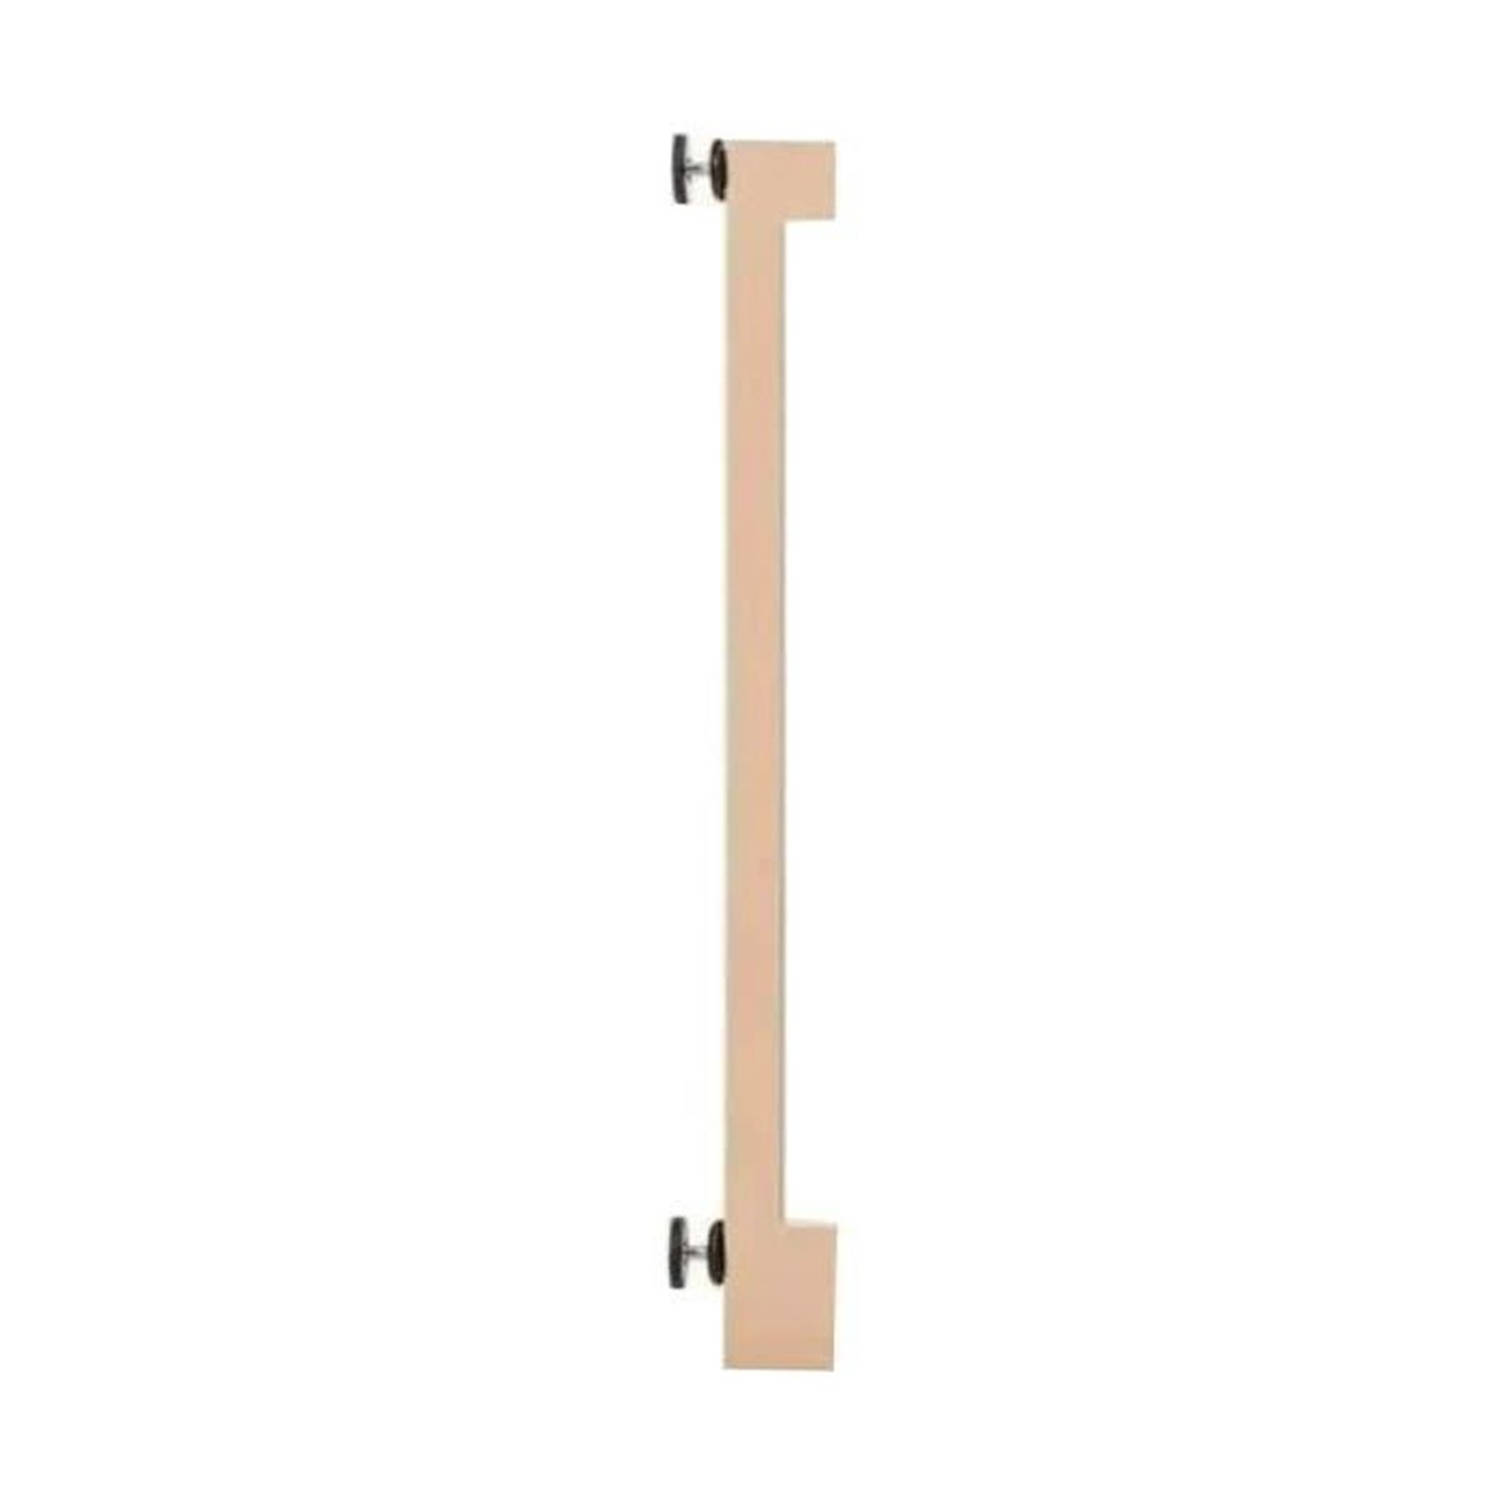 Safety 1st Poortverlenging van 7 cm voor essentiële houten poort - traphekverlenging - Vanaf 6 maanden tot 2 jaar